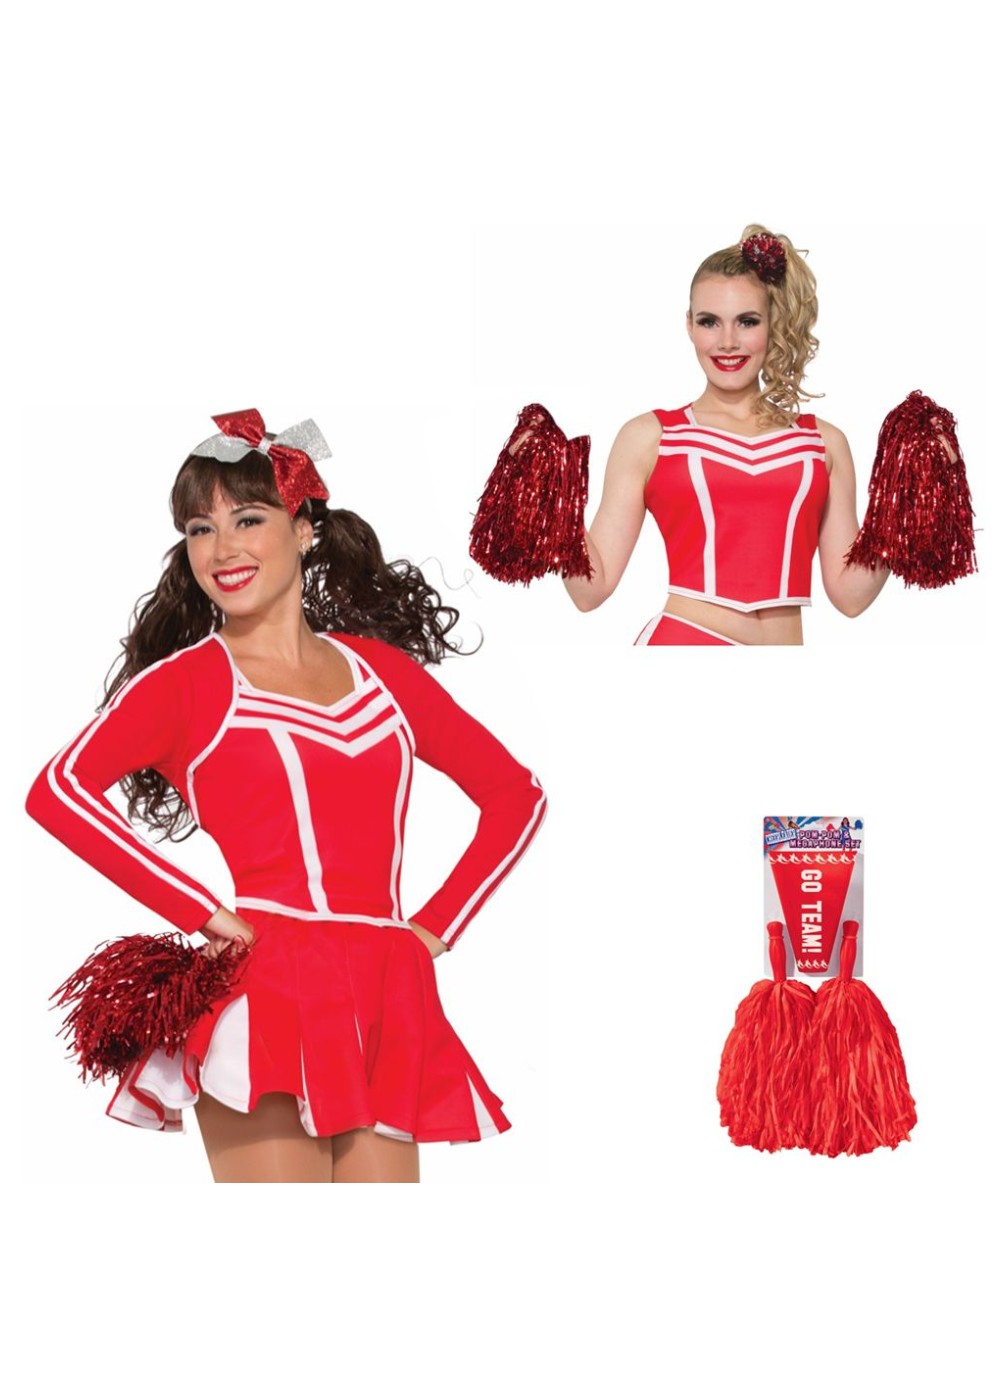 Red Cheerleader Women Costume Kit